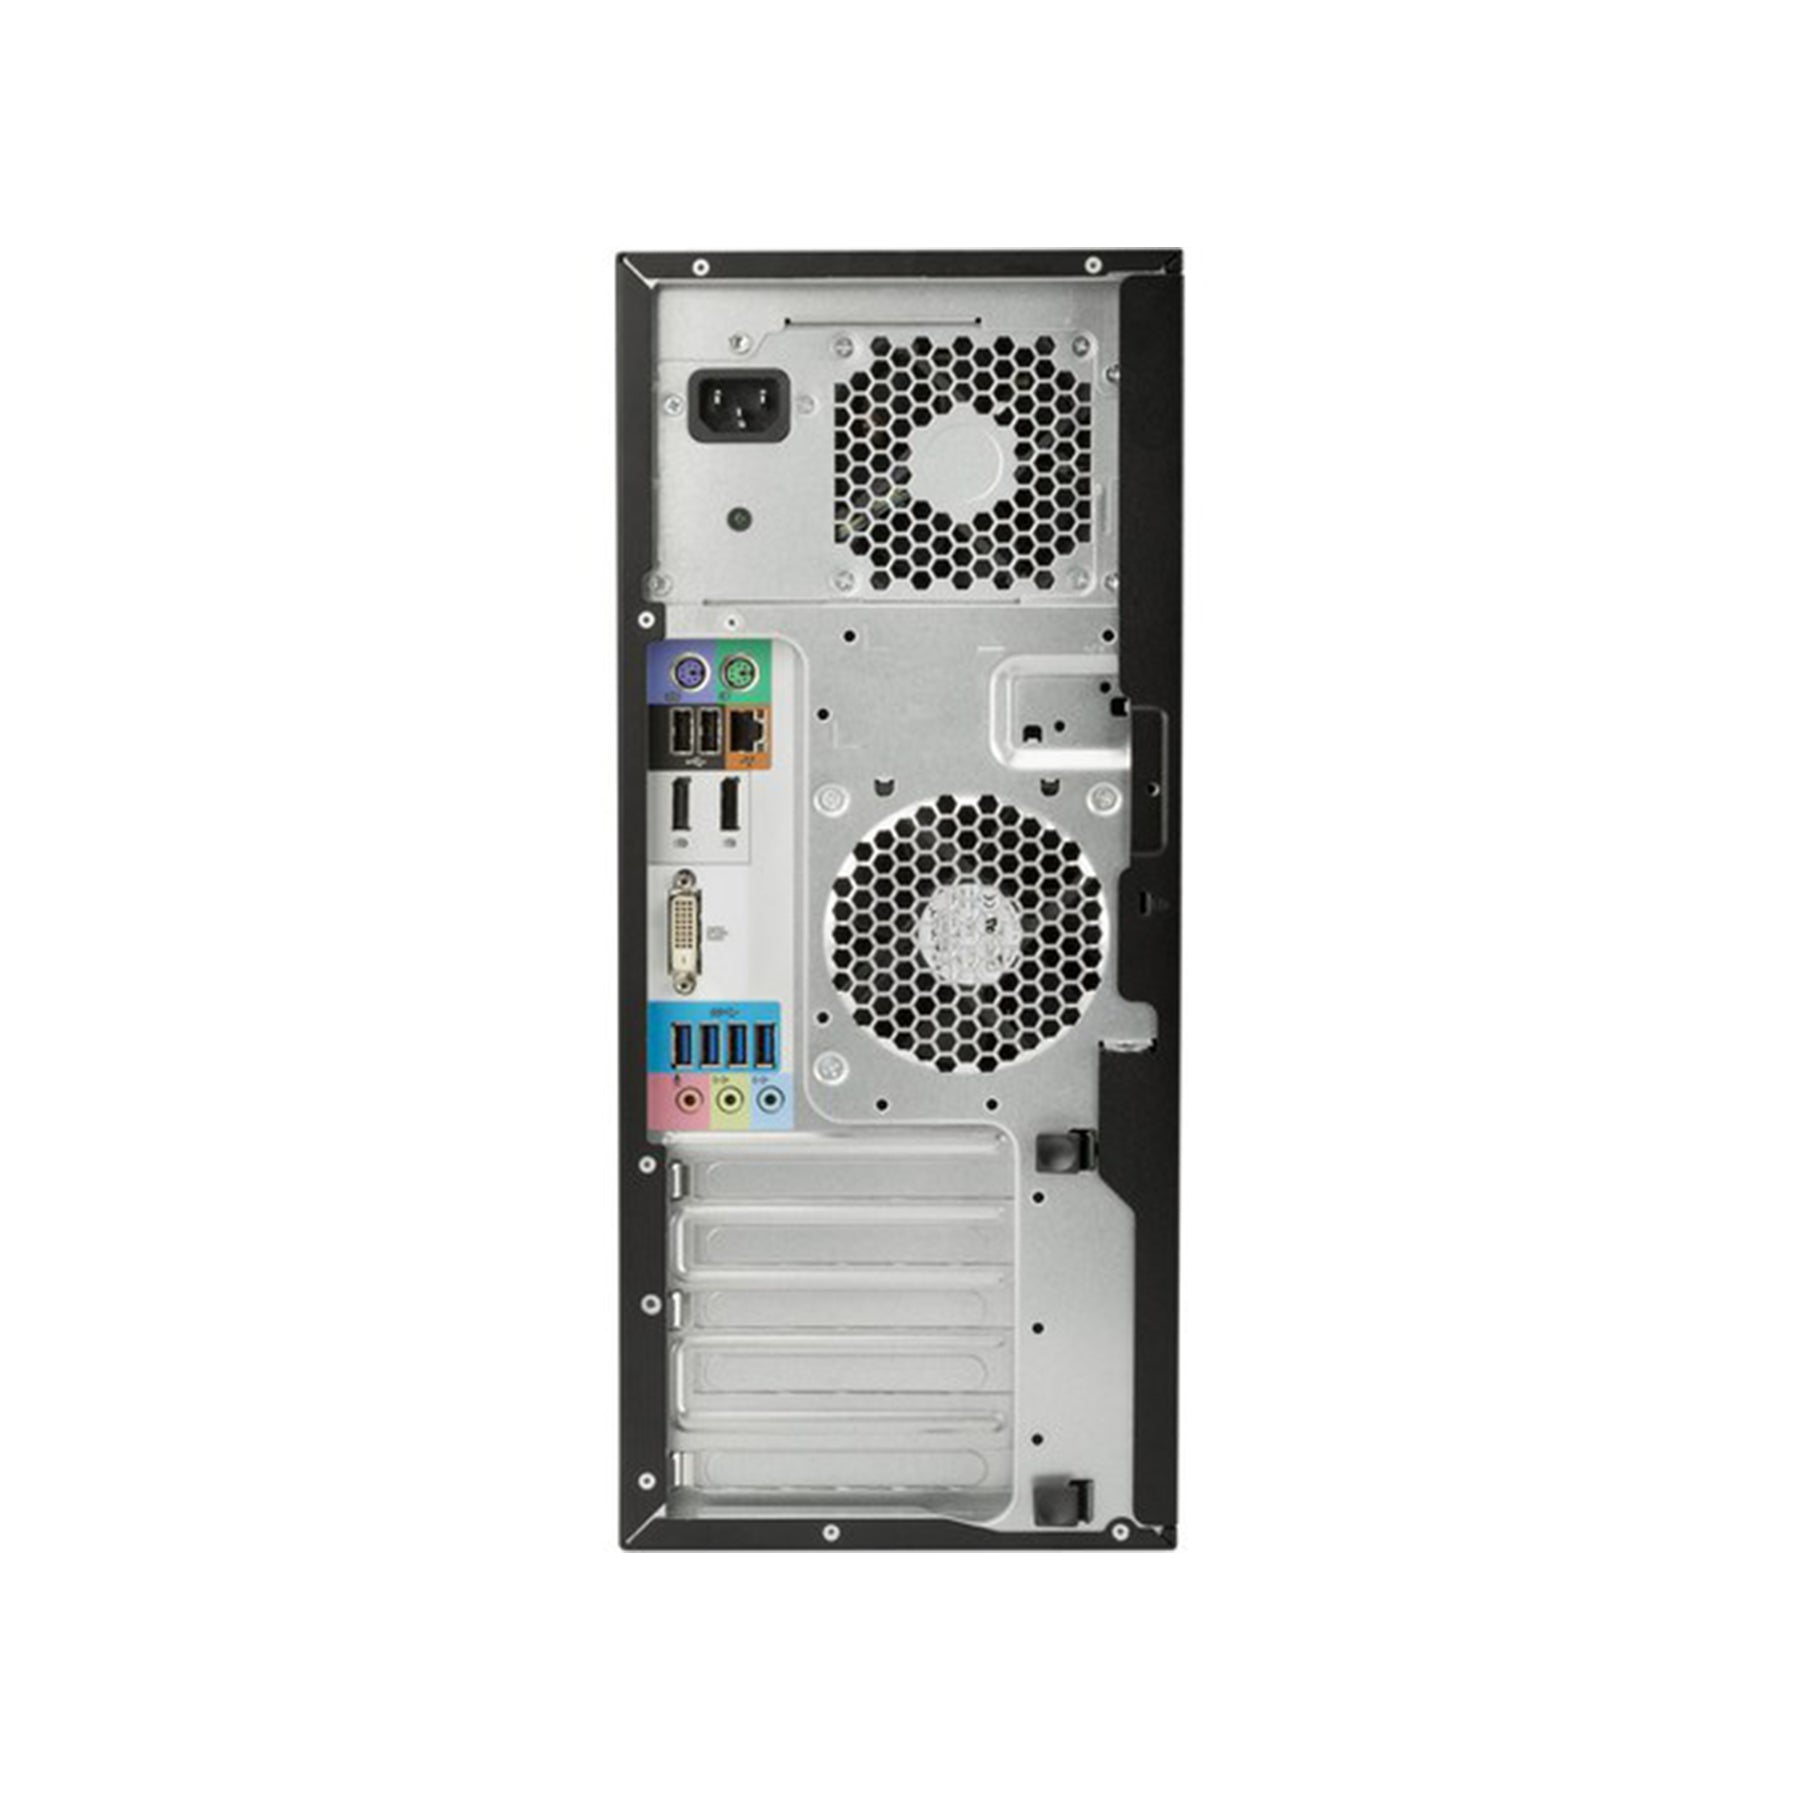 HP Z240 Tower Workstation Intel Xeon E3-1225 32GB RAM 2TB HDD - Black